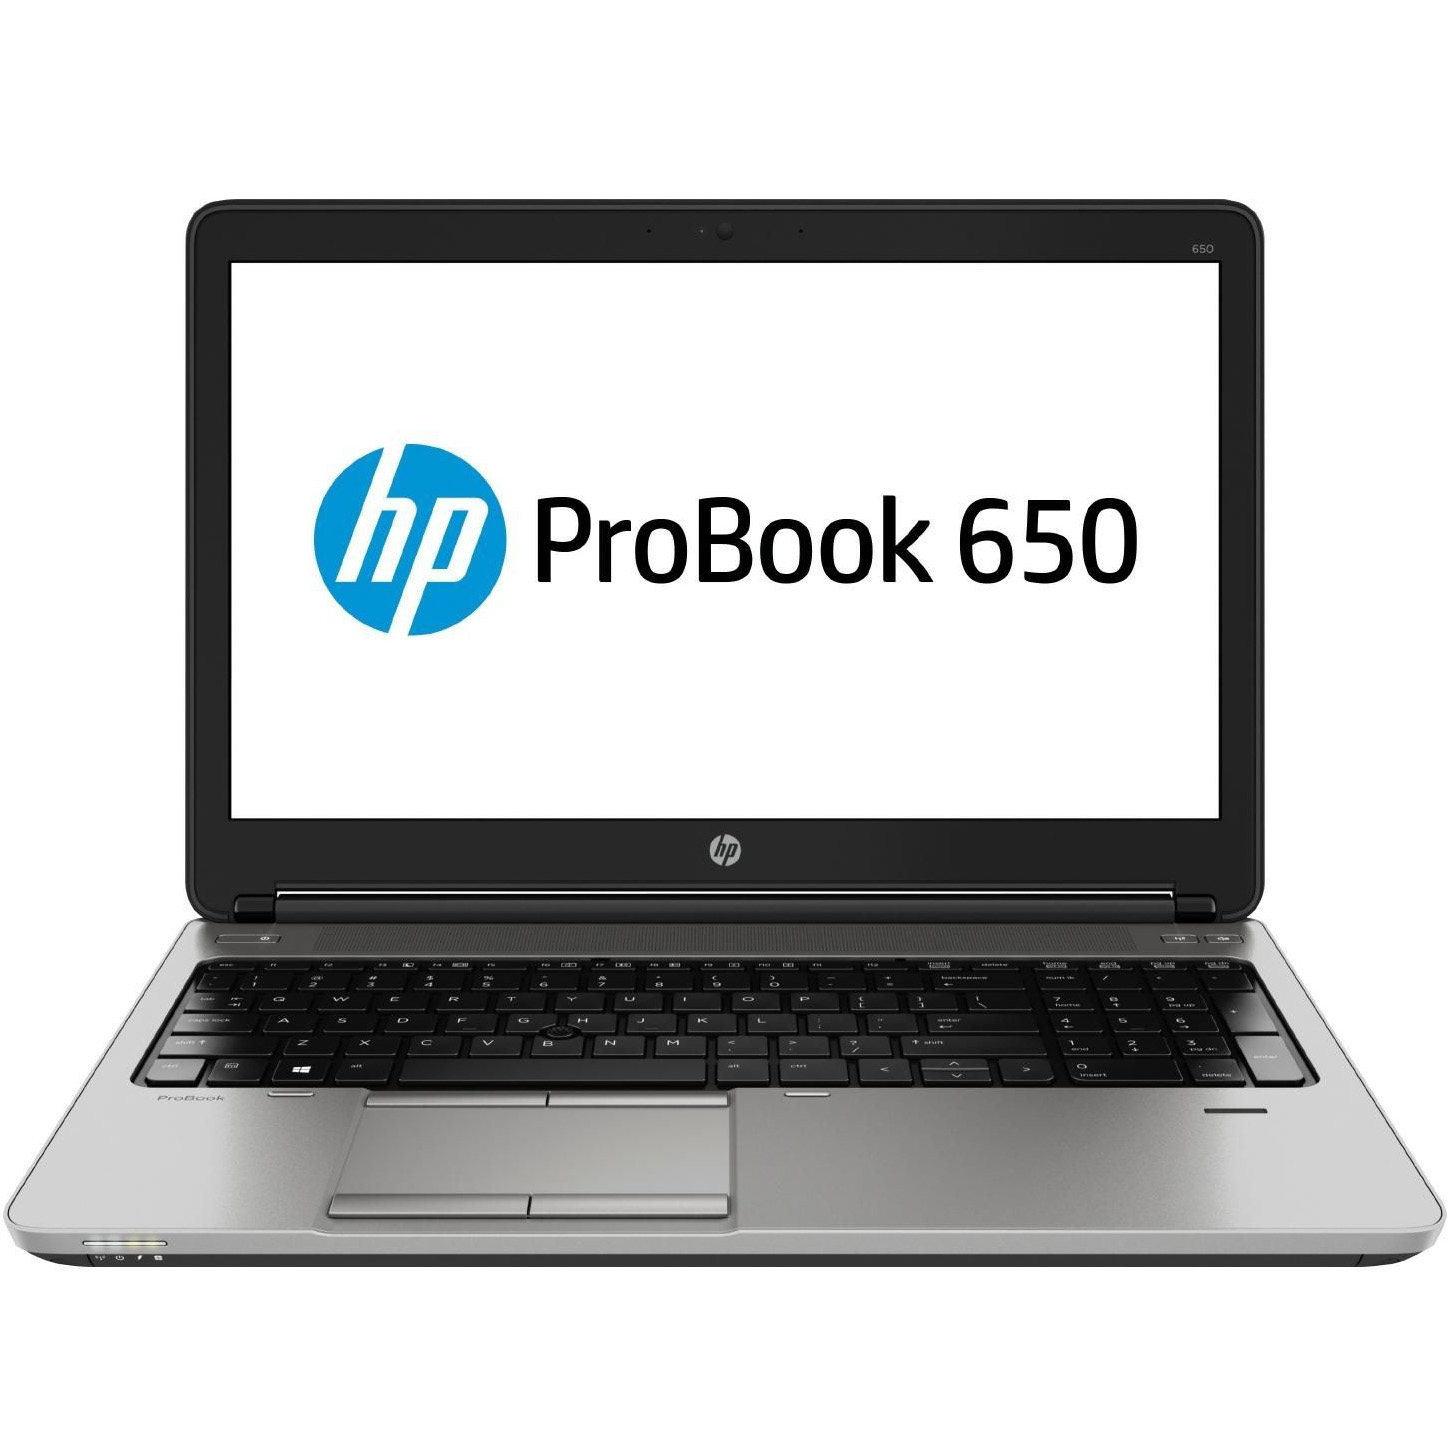 فرصة لاب توب اتش بي HP ProBook 650 G1 مستعمل كسر زيرو